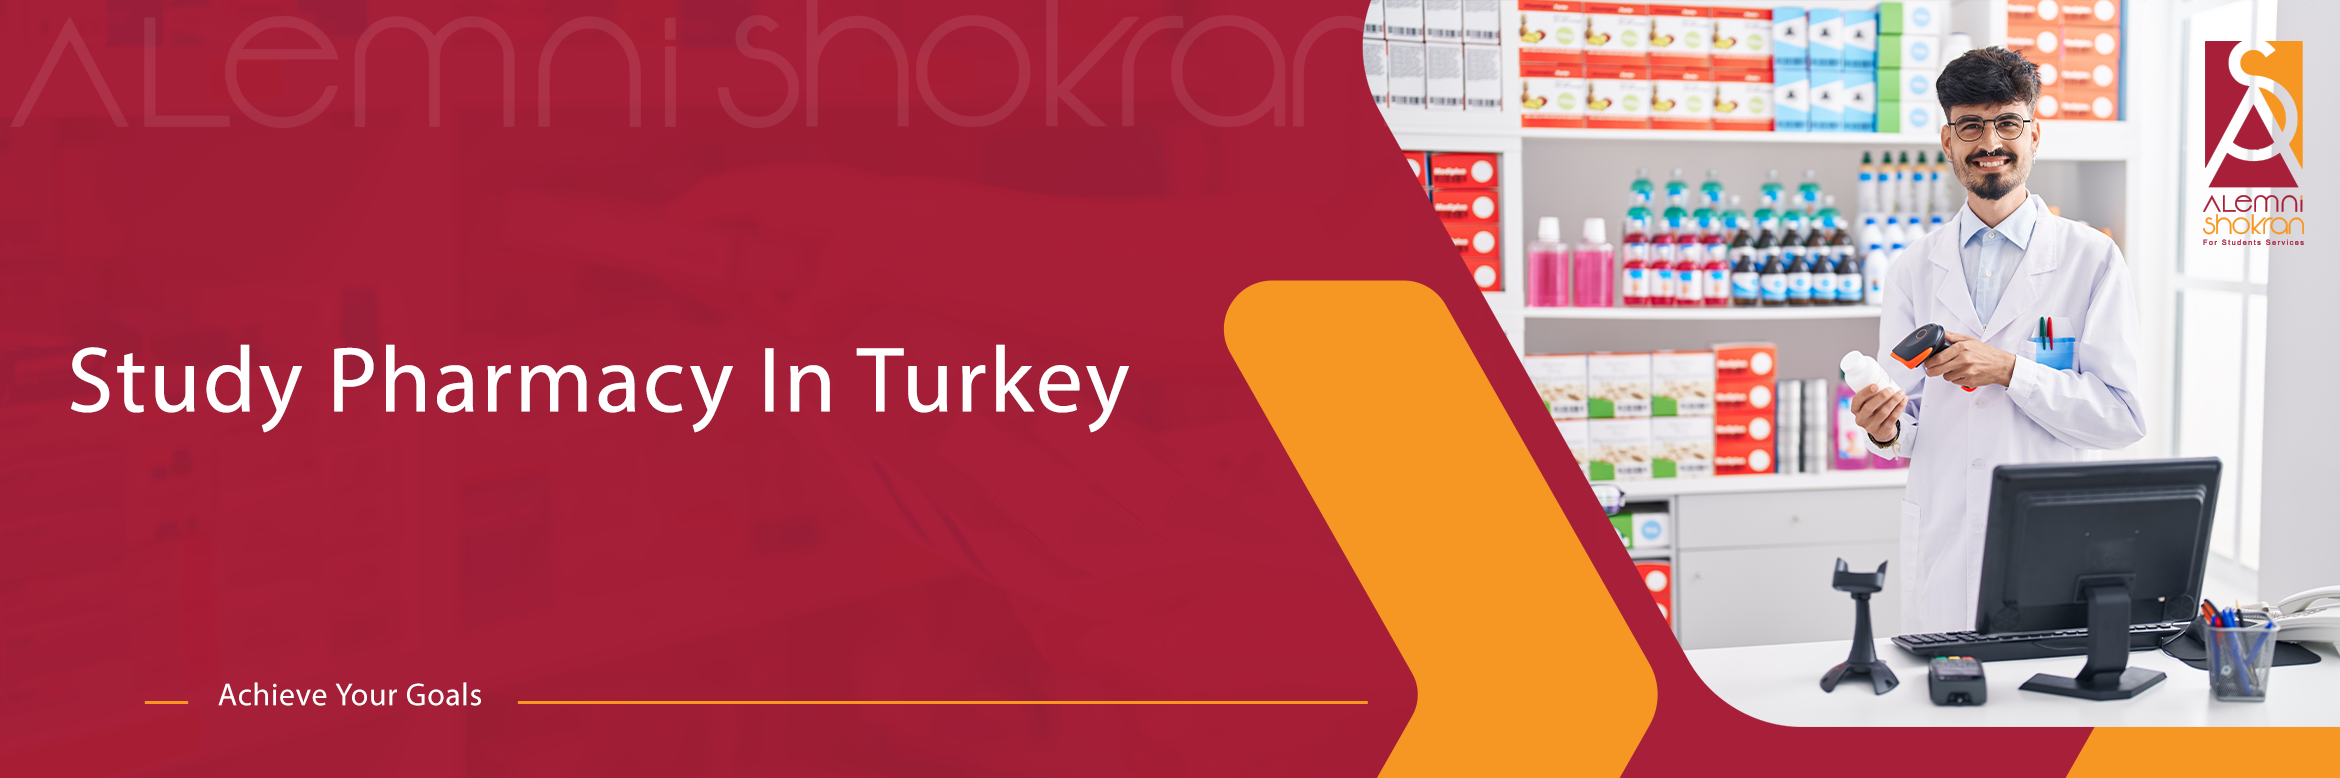 Study Pharmacy In Turkey